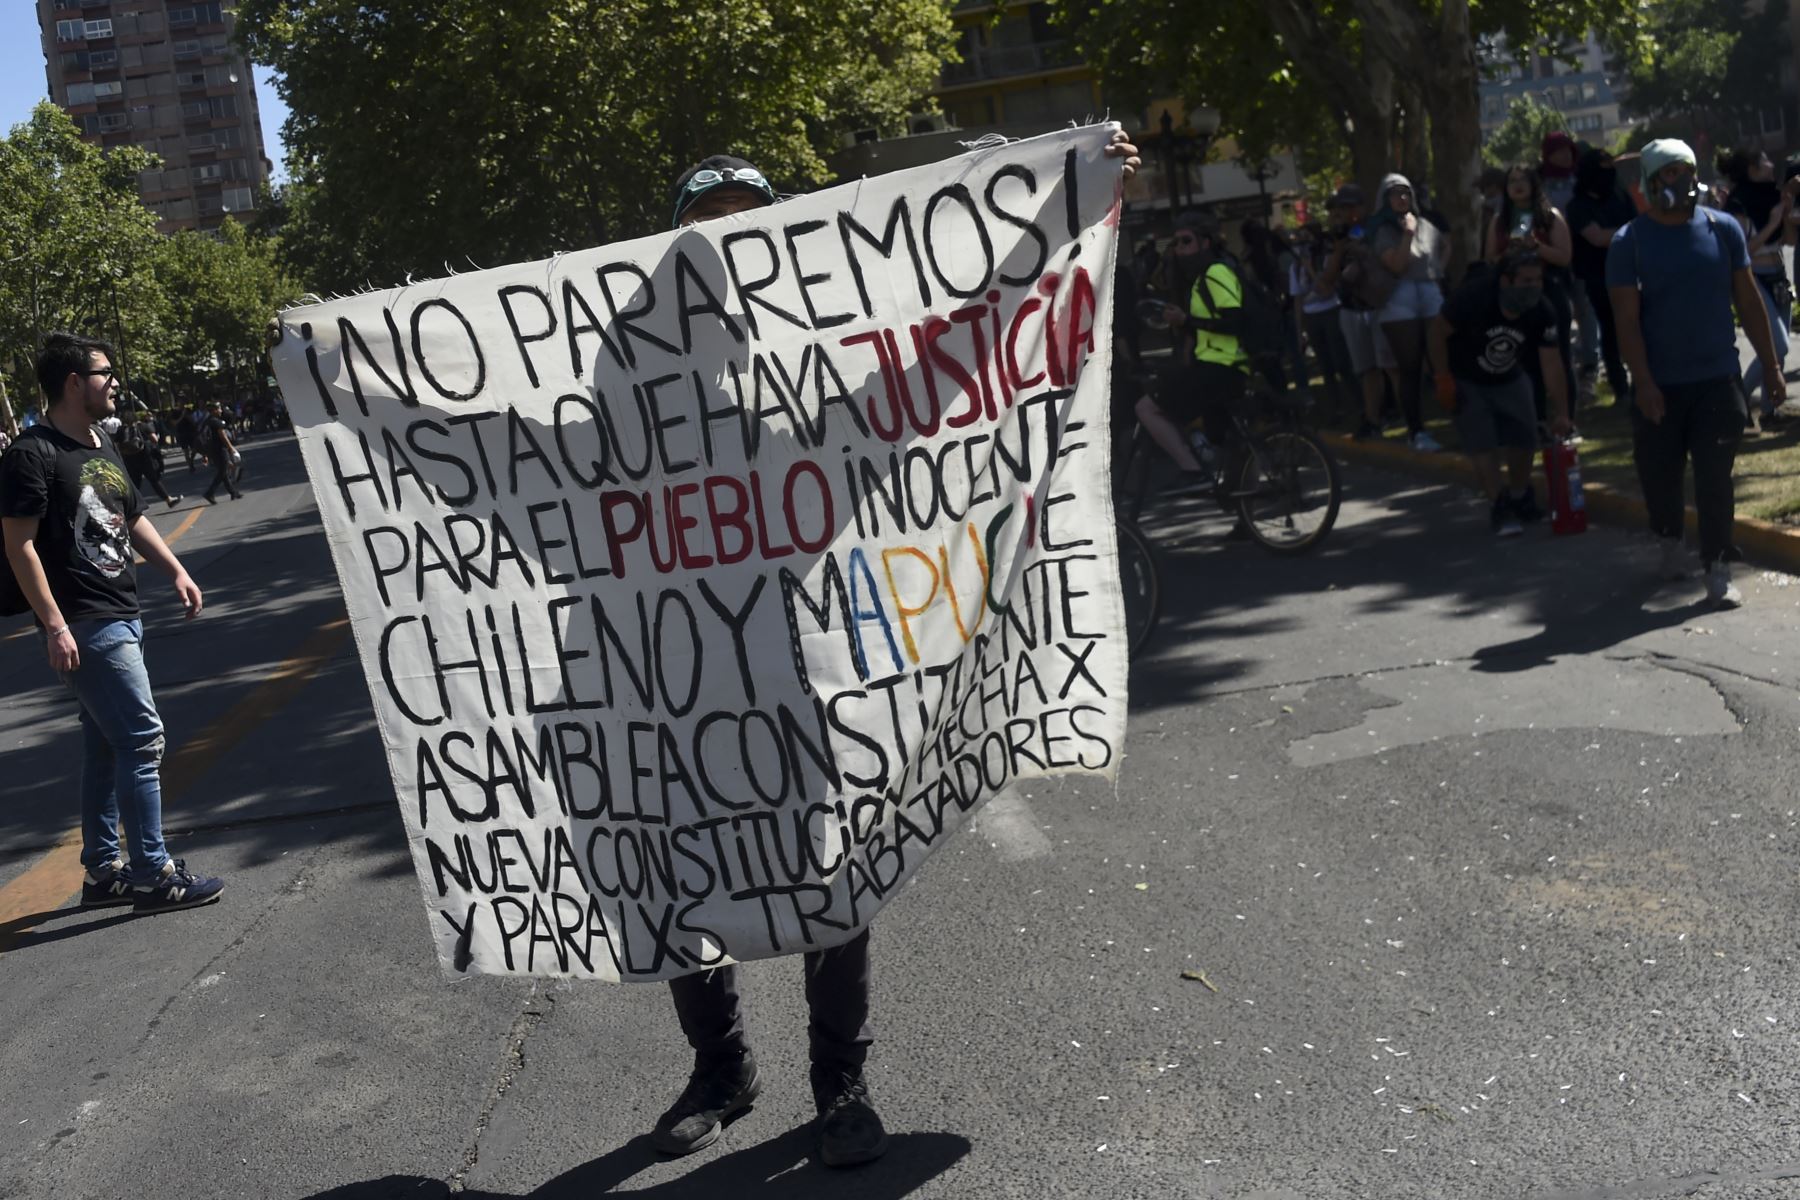 Un manifestante participa en una protesta contra las políticas gubernamentales cerca del Centro Costanera  en Santiago.
Foto: AFP